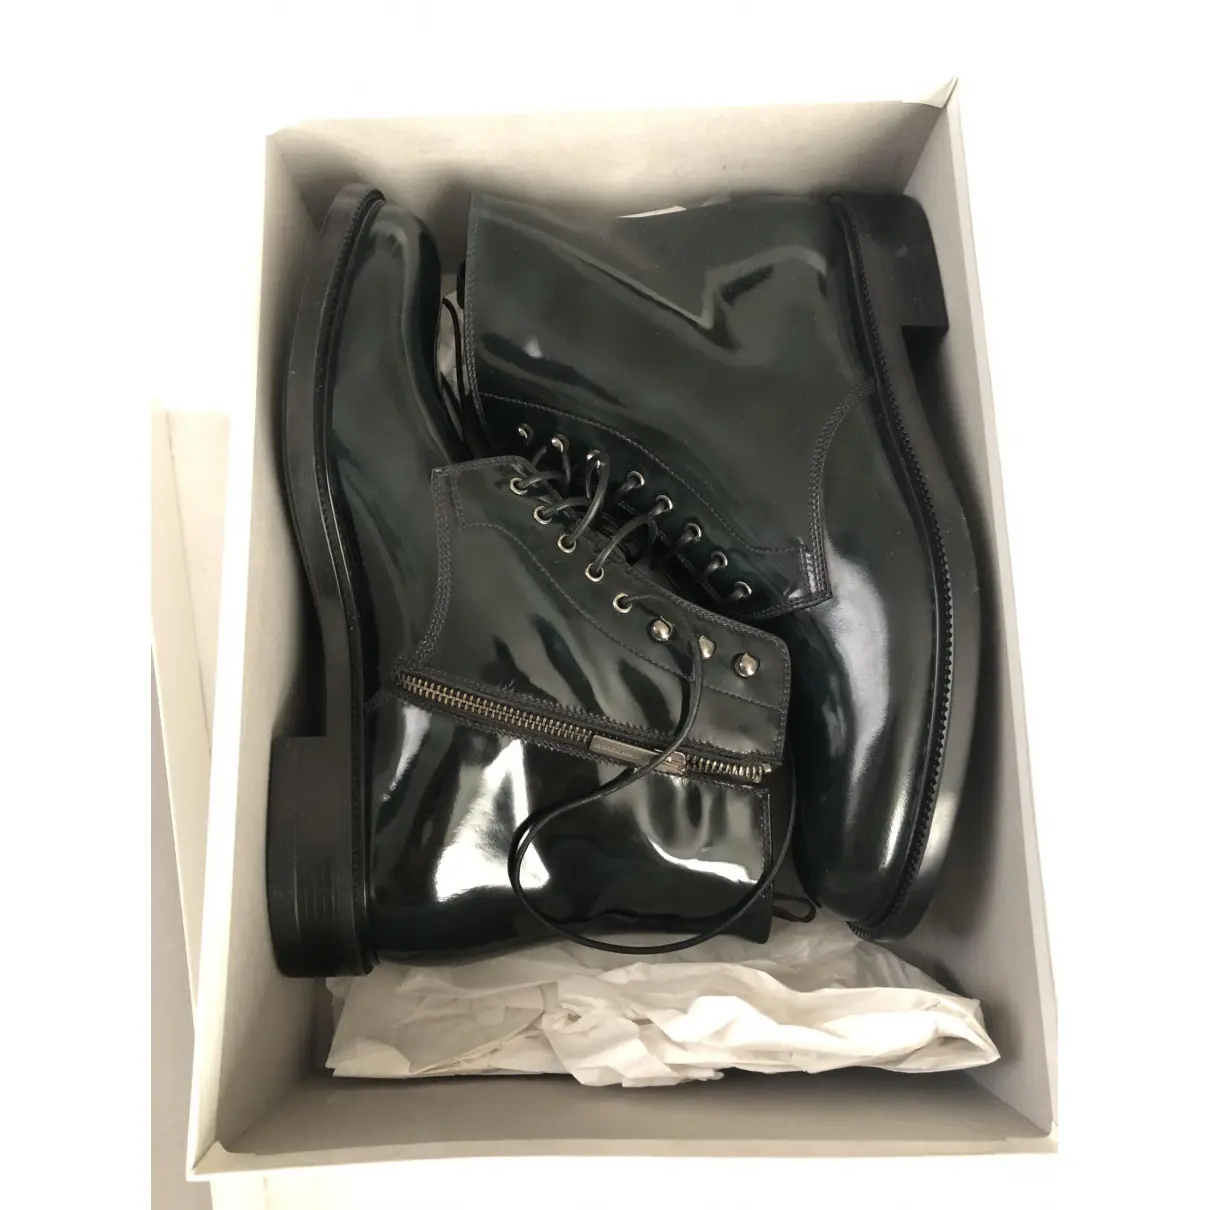 Leather boots Giorgio Armani